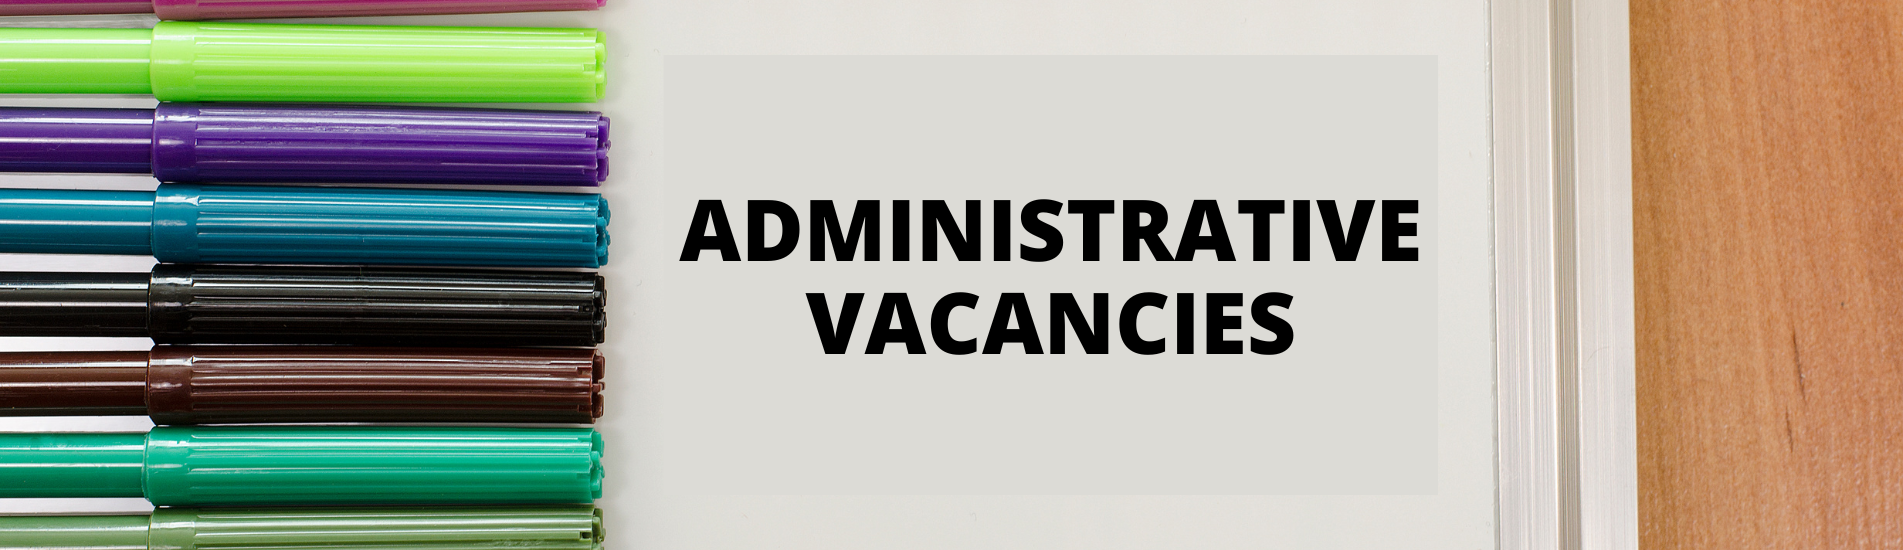 Administrative Vacancies